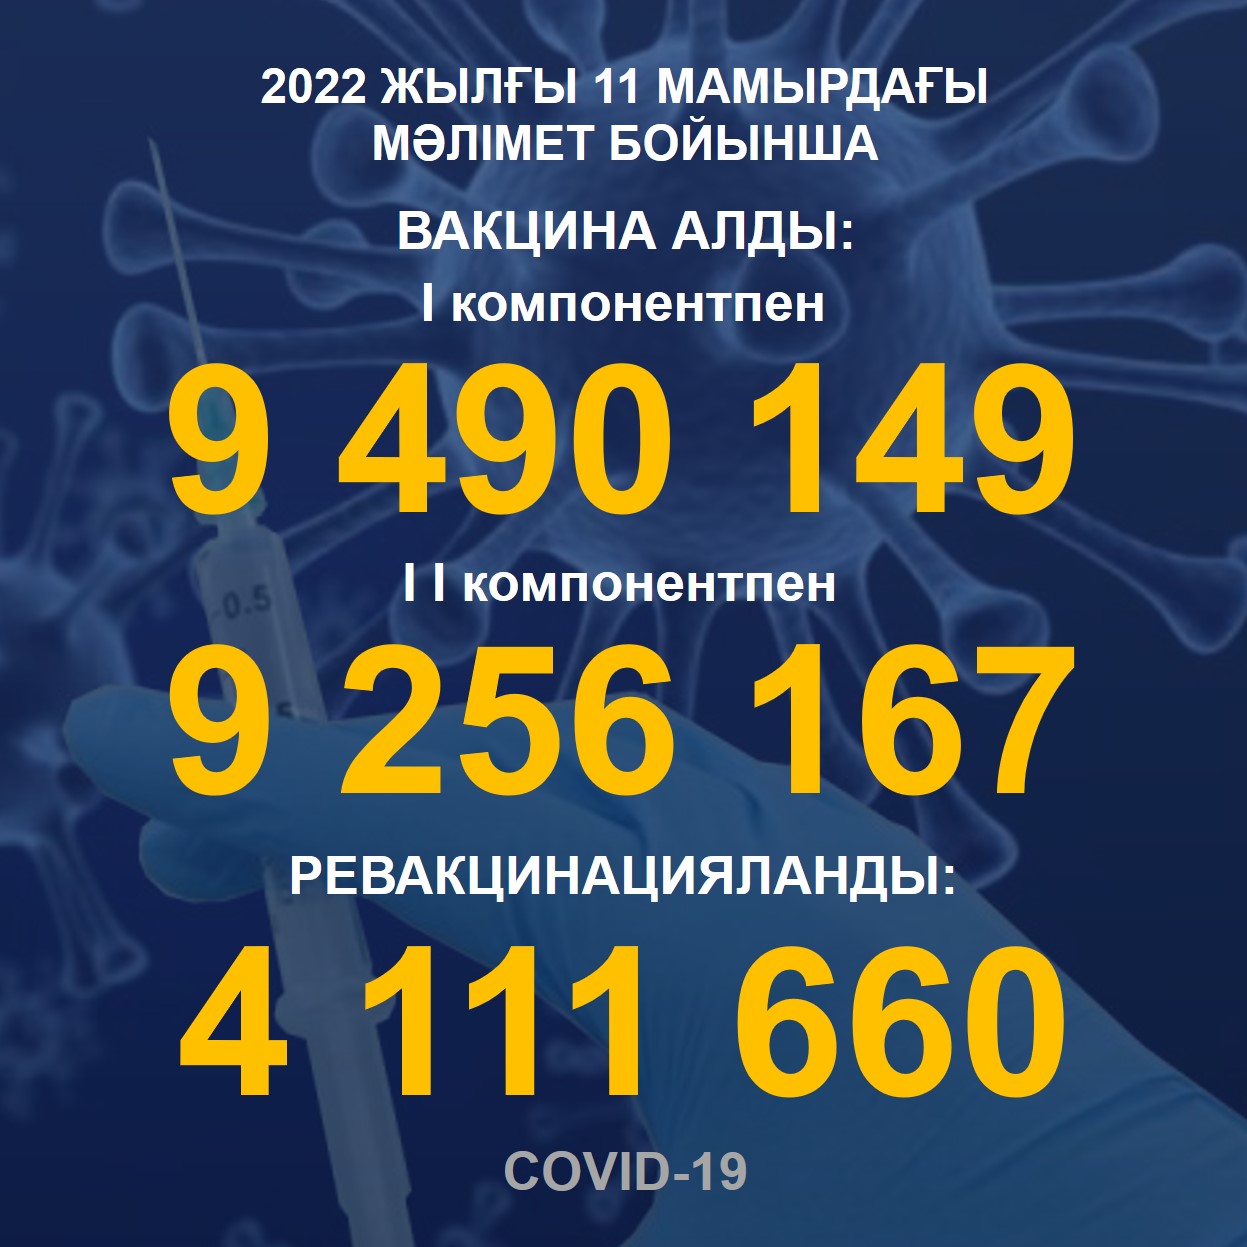 2022 жылғы 11.05 мәлімет бойынша Қазақстанда I компонентпен 9 490 149 адам вакцина салдырды, II компонентпен 9 256 167 адам. Ревакцинацияланды – 4 111 660